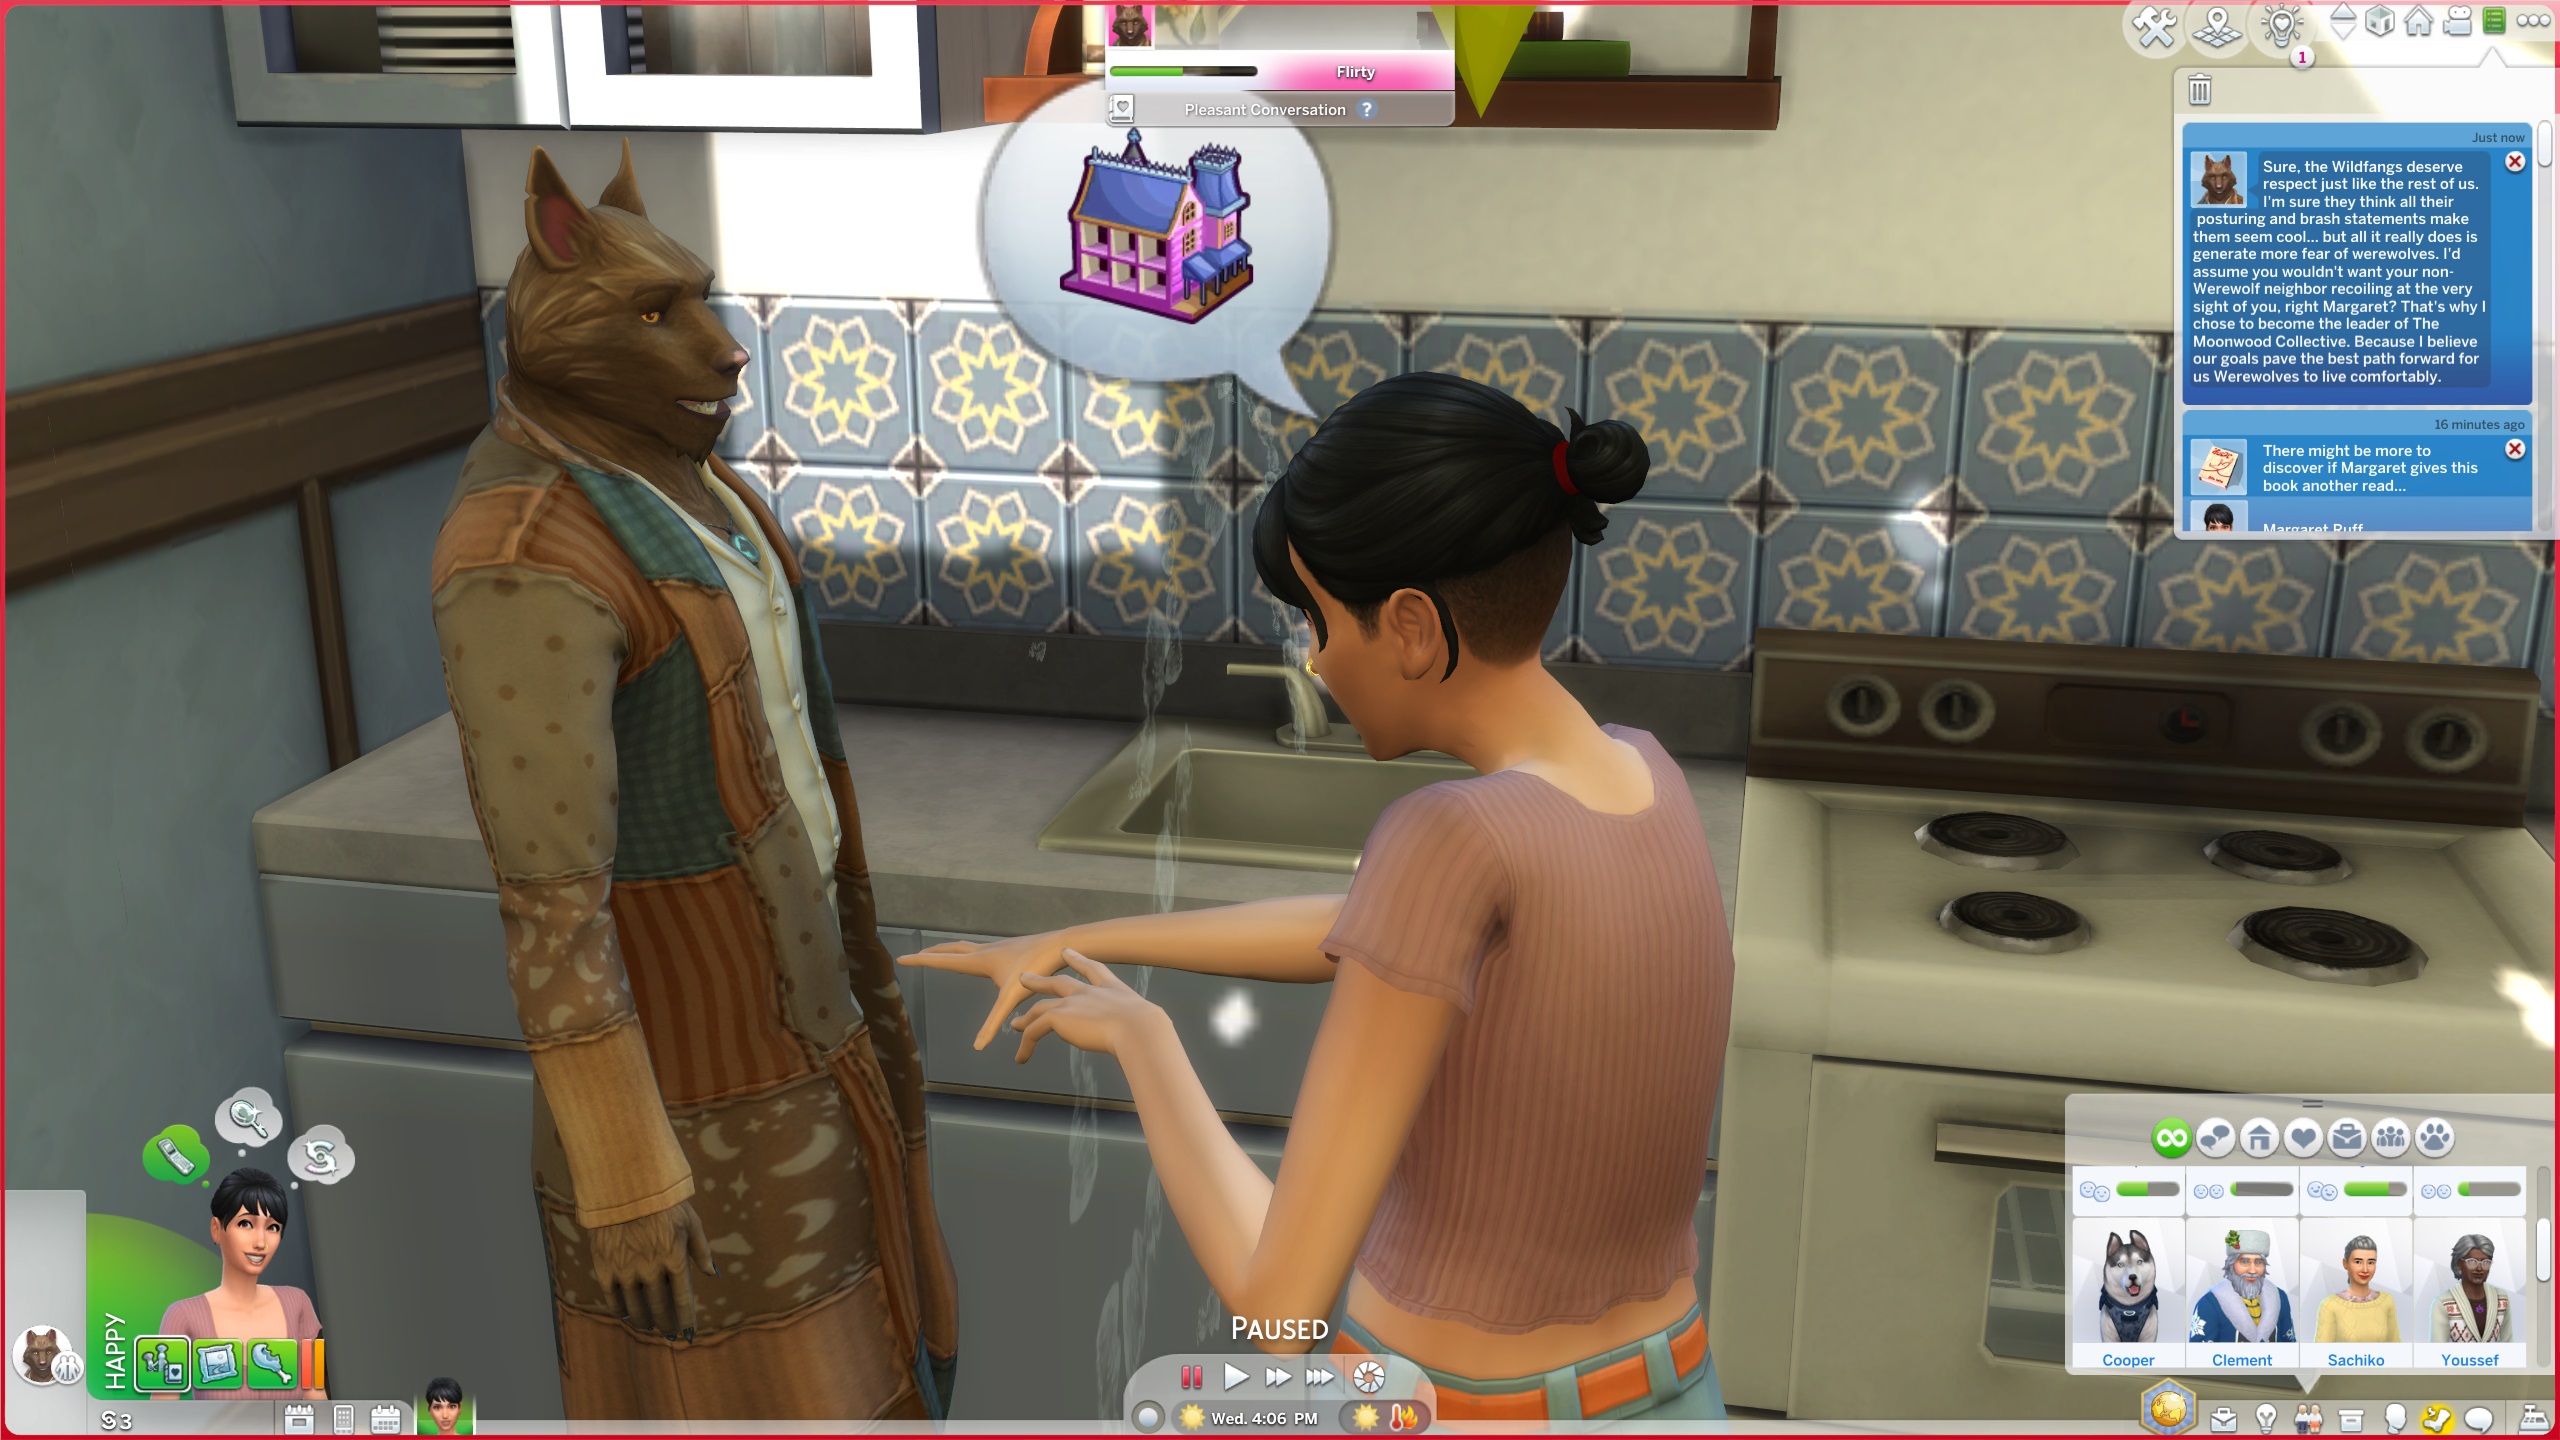 The Sims 4 Người sói - Sim nói chuyện với người sói Kristopher trong nhà bếp.